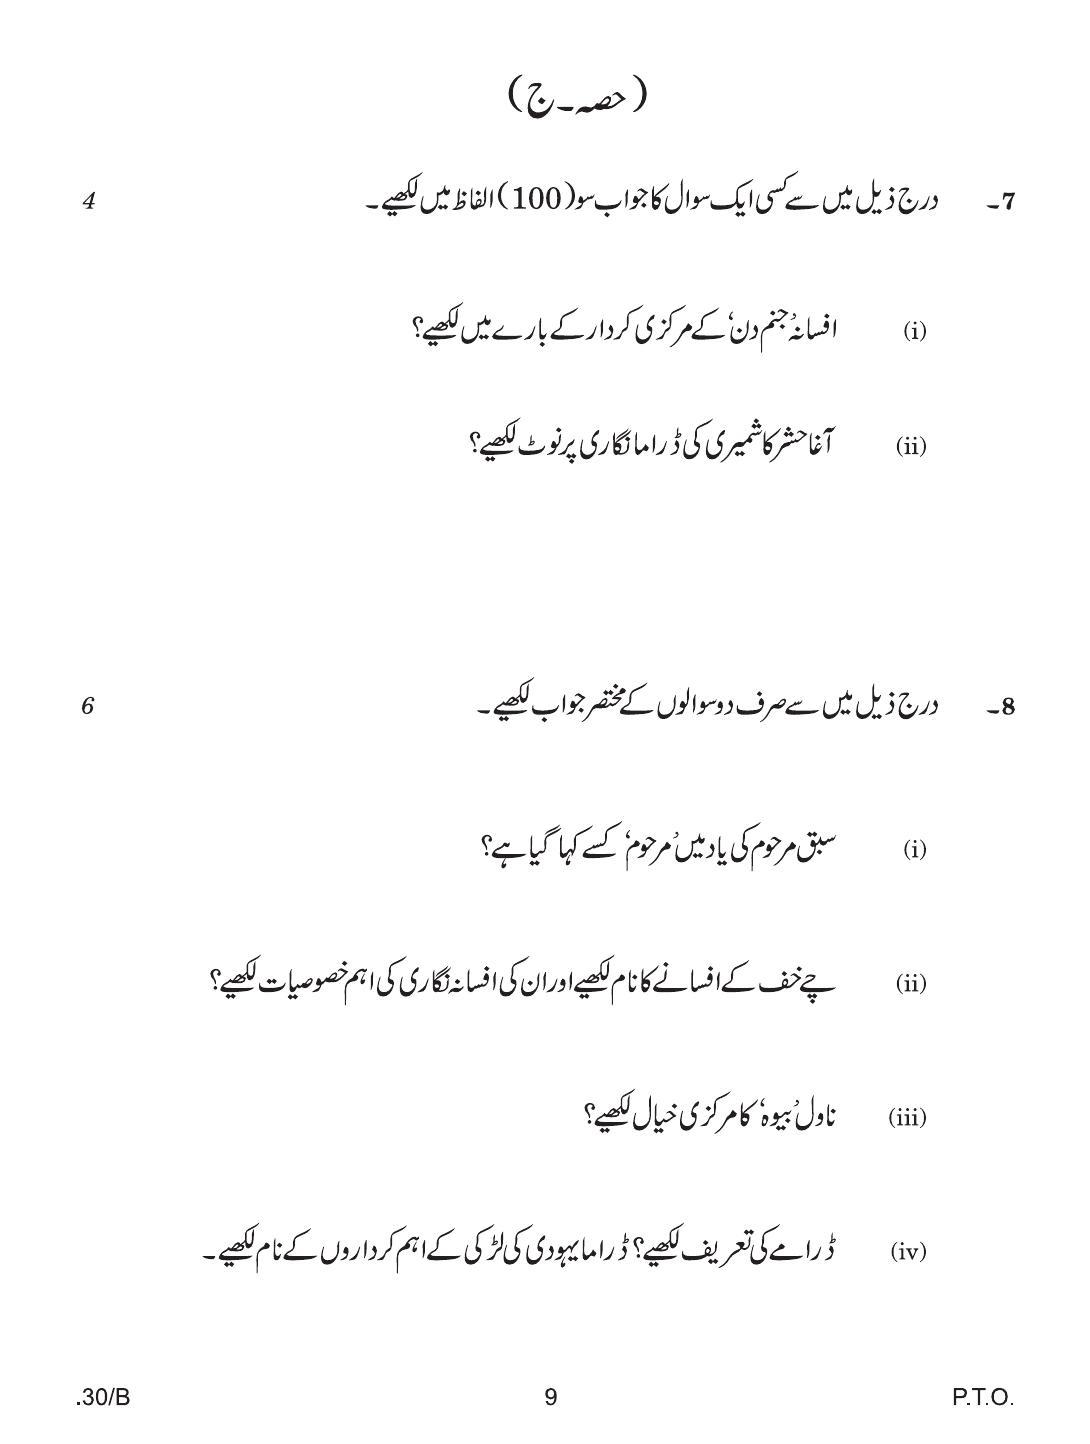 CBSE Class 12 Urdu Elective 2020 Compartment Question Paper - Page 9